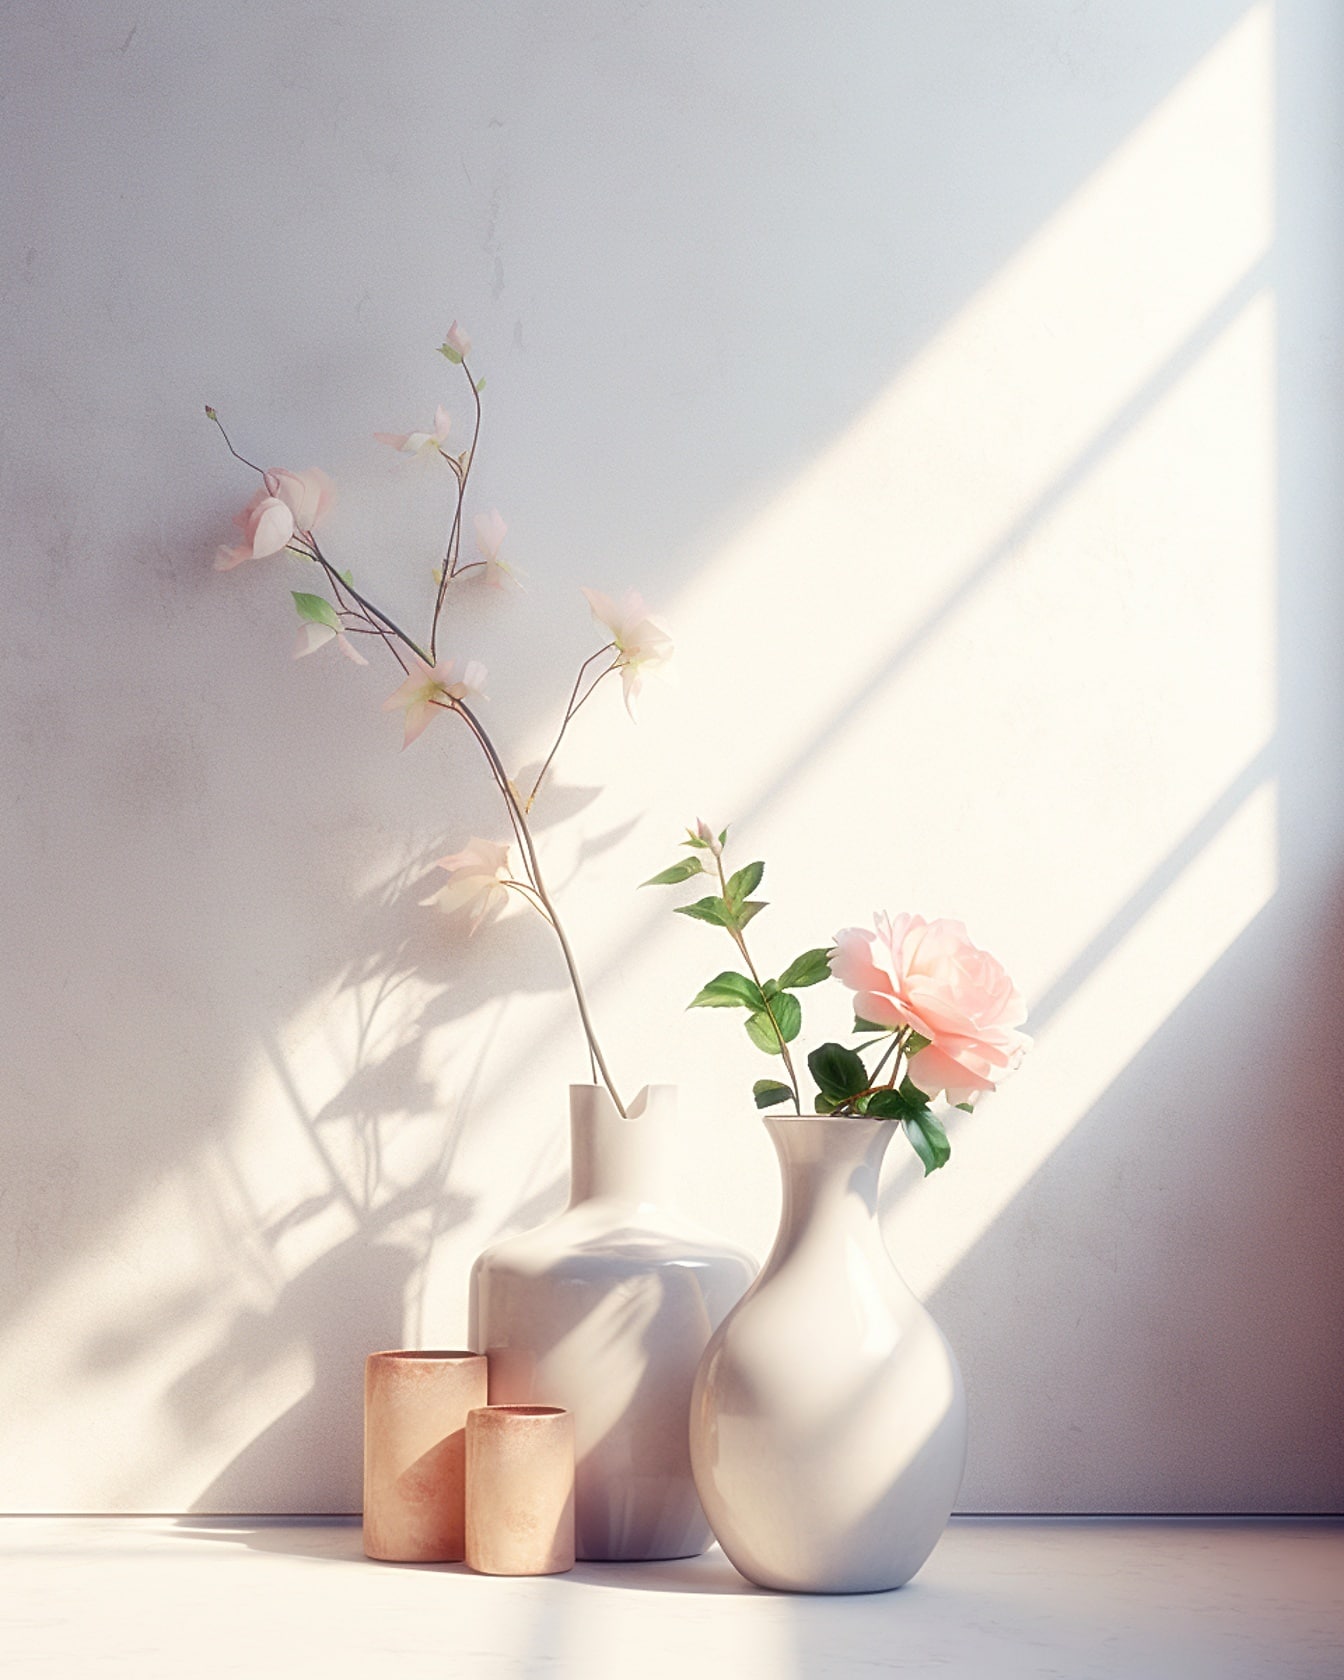 Dve porcelánové biele vázy s bielymi ružovými kvetmi v ňom na stole pri mäkkom svetle